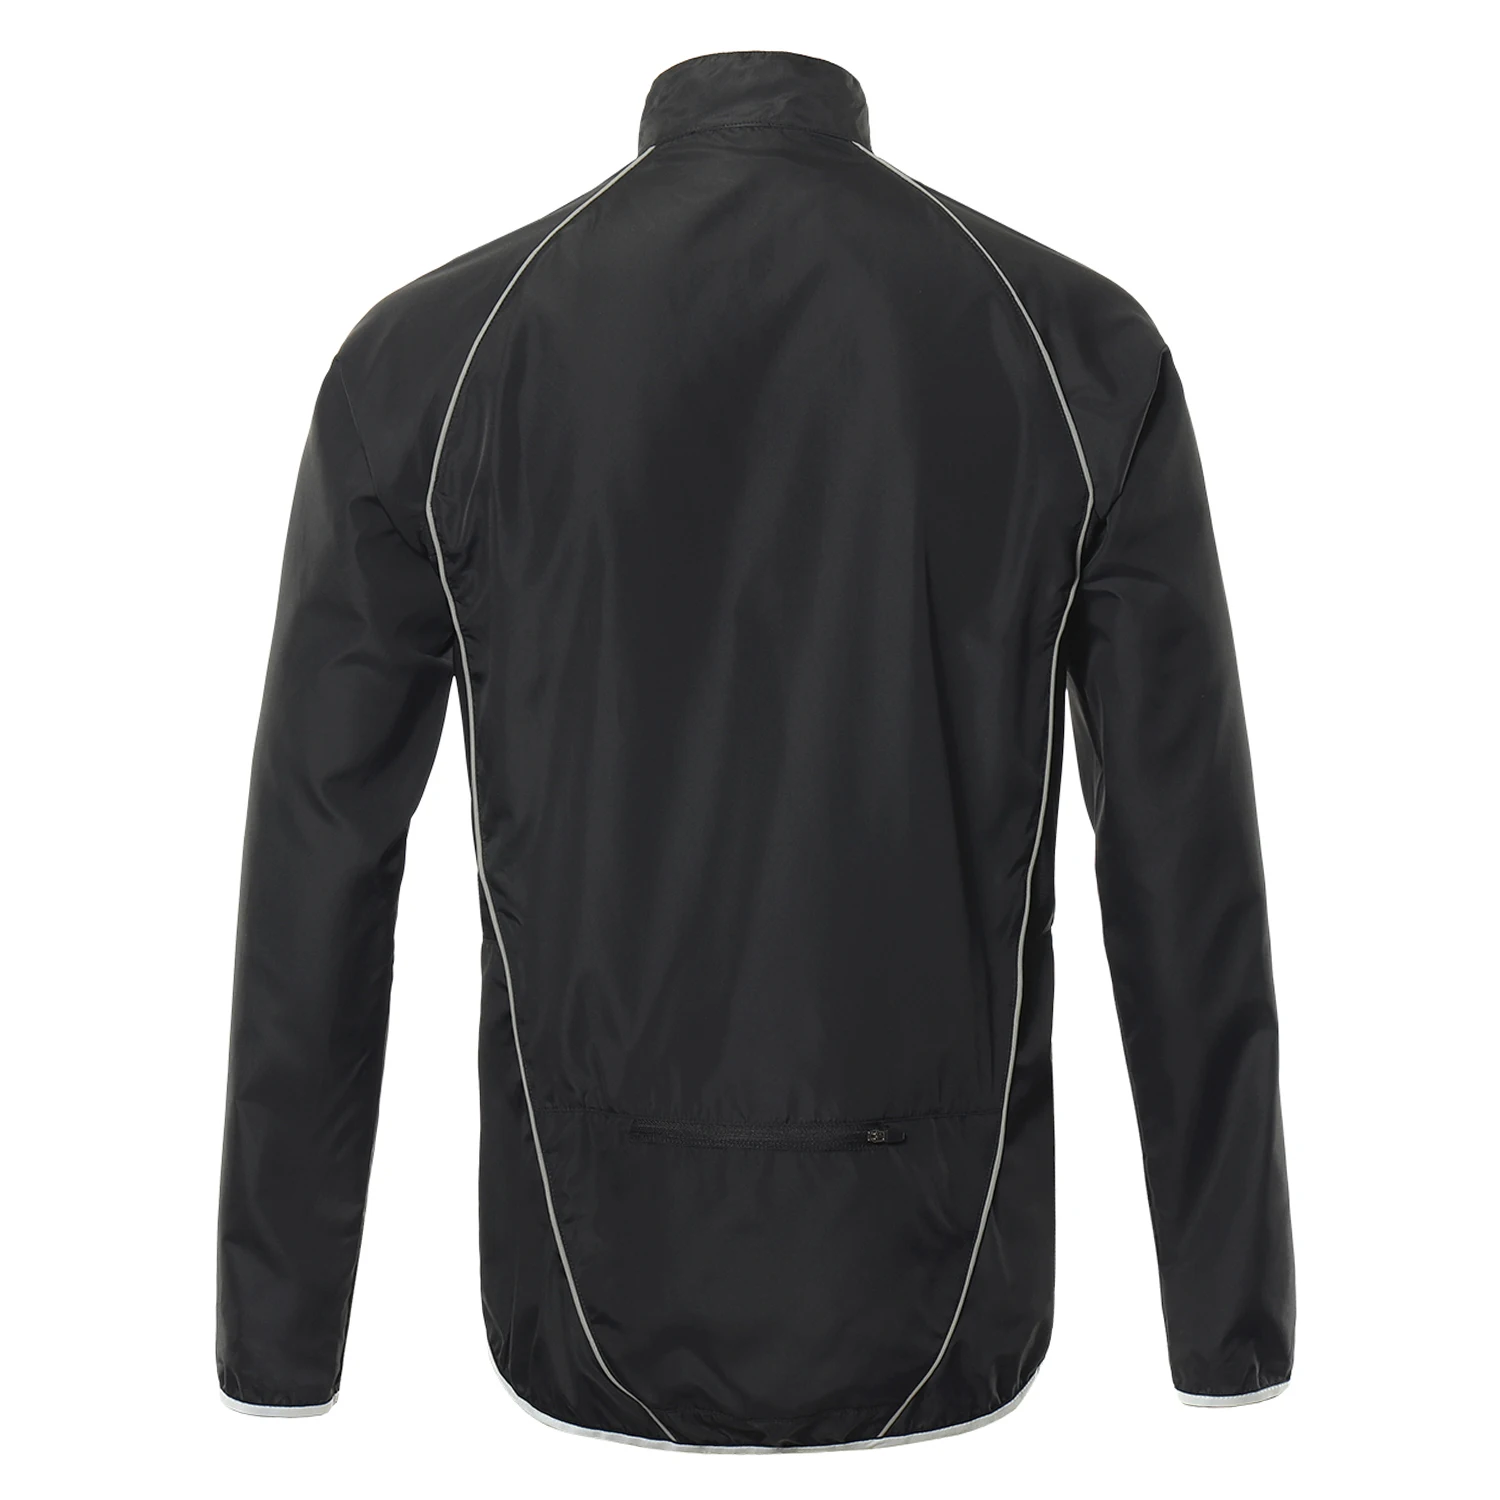 Мужская Светоотражающая велосипедная куртка, дышащая, с длинным рукавом, для велосипеда, Джерси, ветровка, жилет, для улицы, Спортивная, водонепроницаемая, спортивная одежда